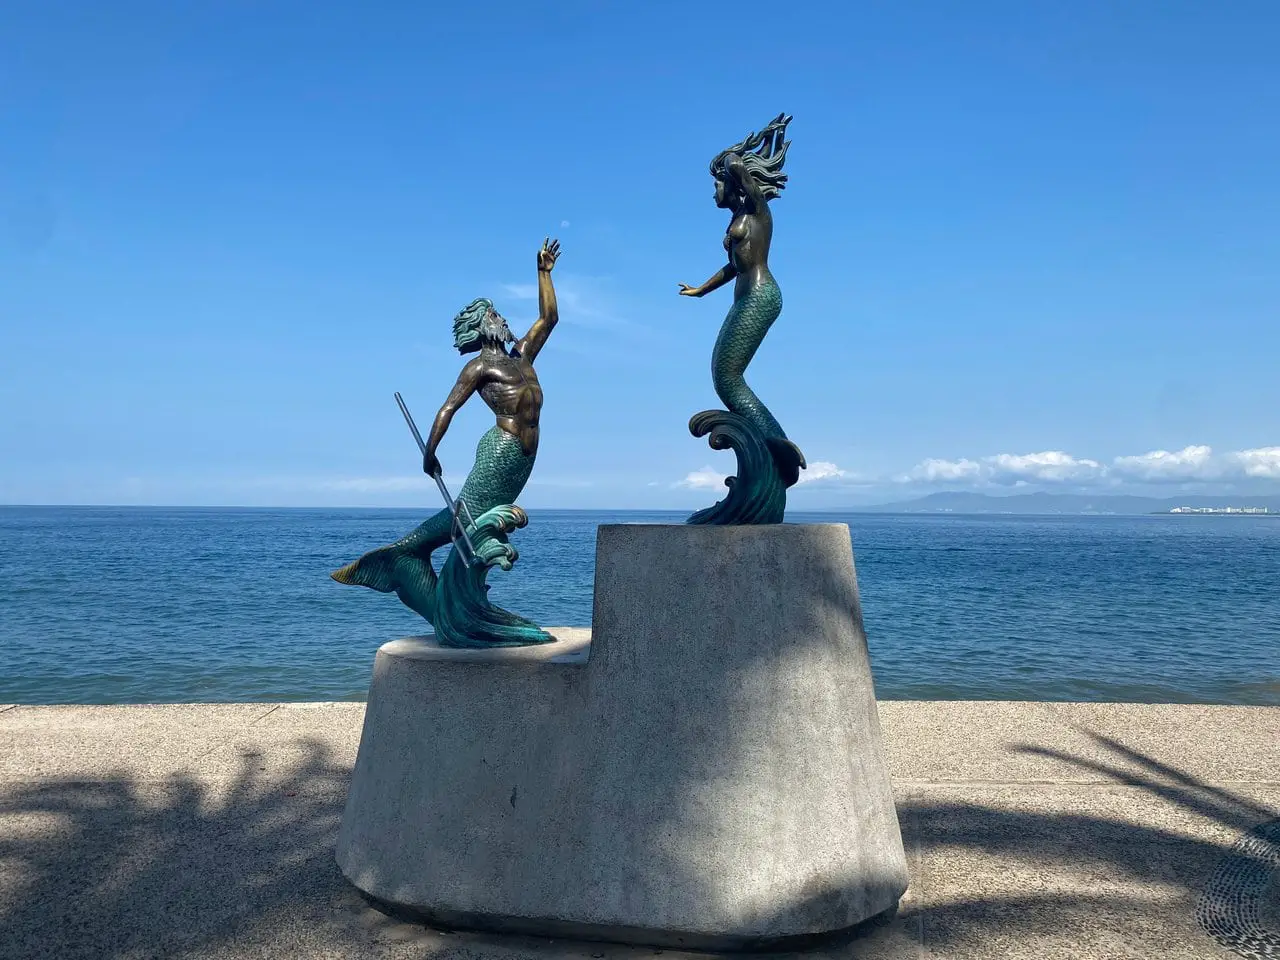 Sculptures in front of ocean